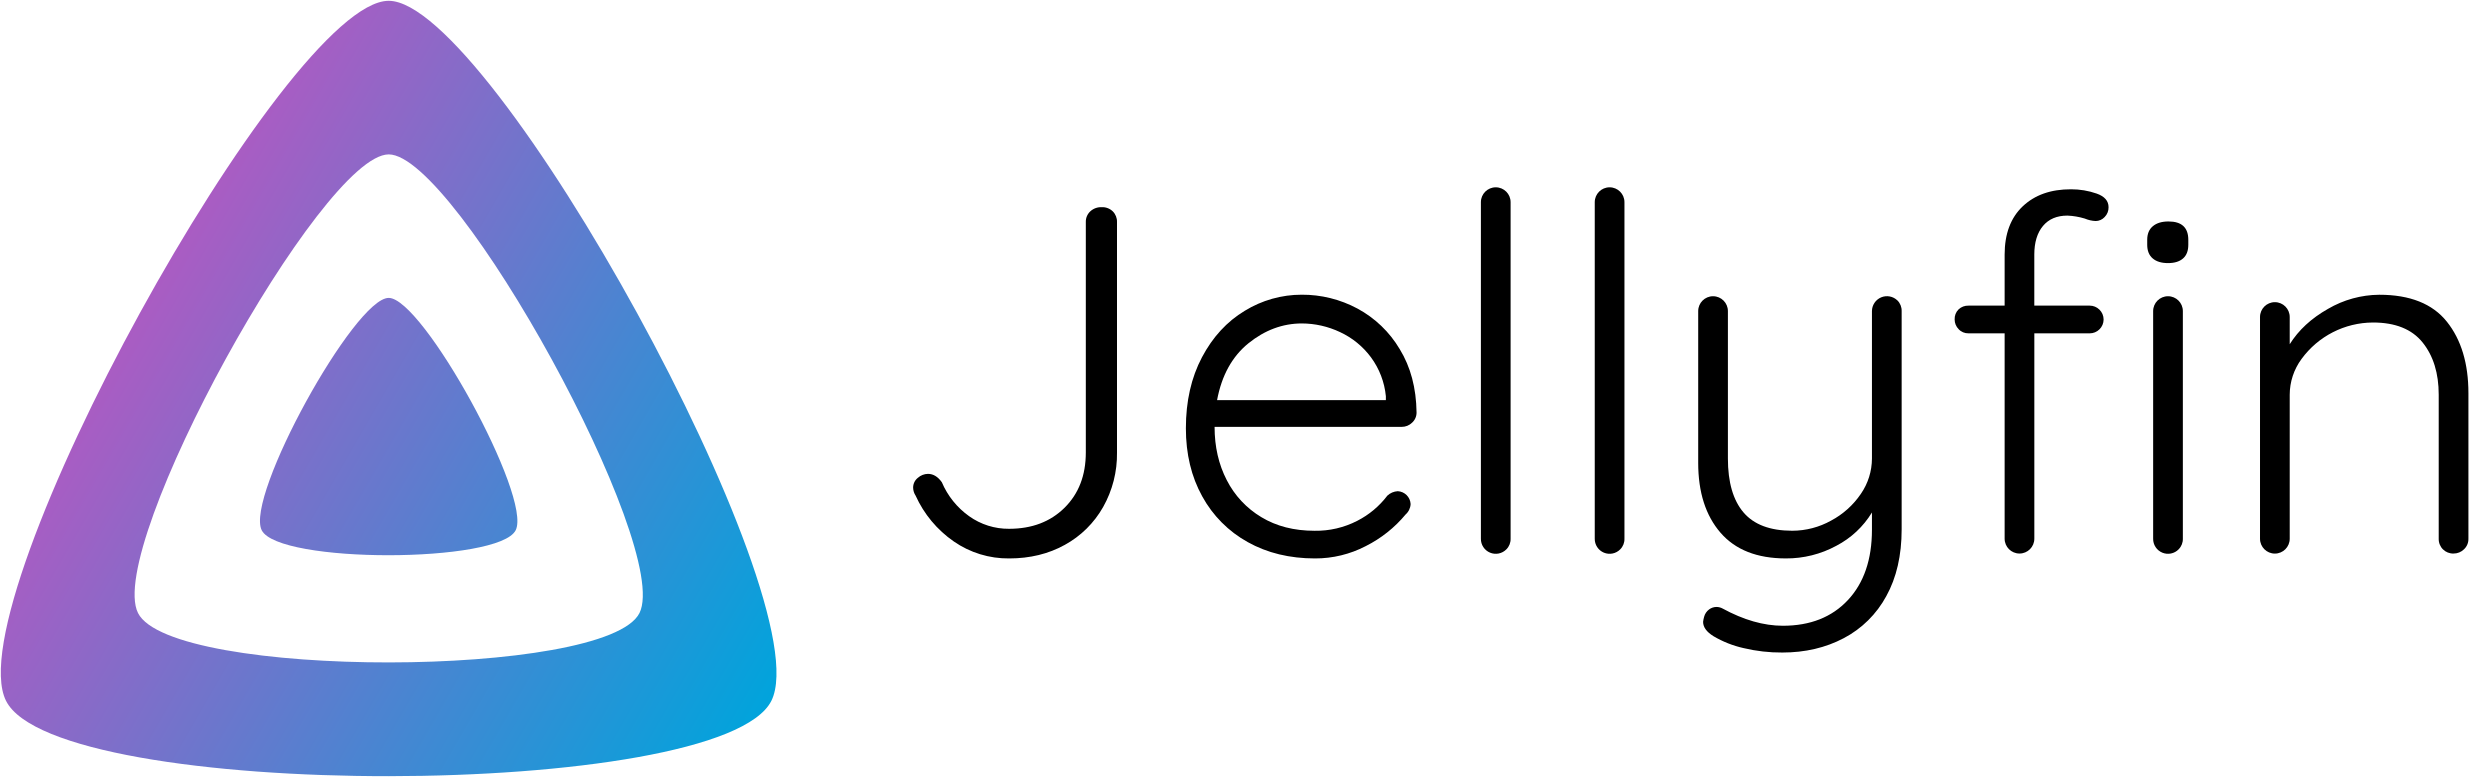 jellyfin logo